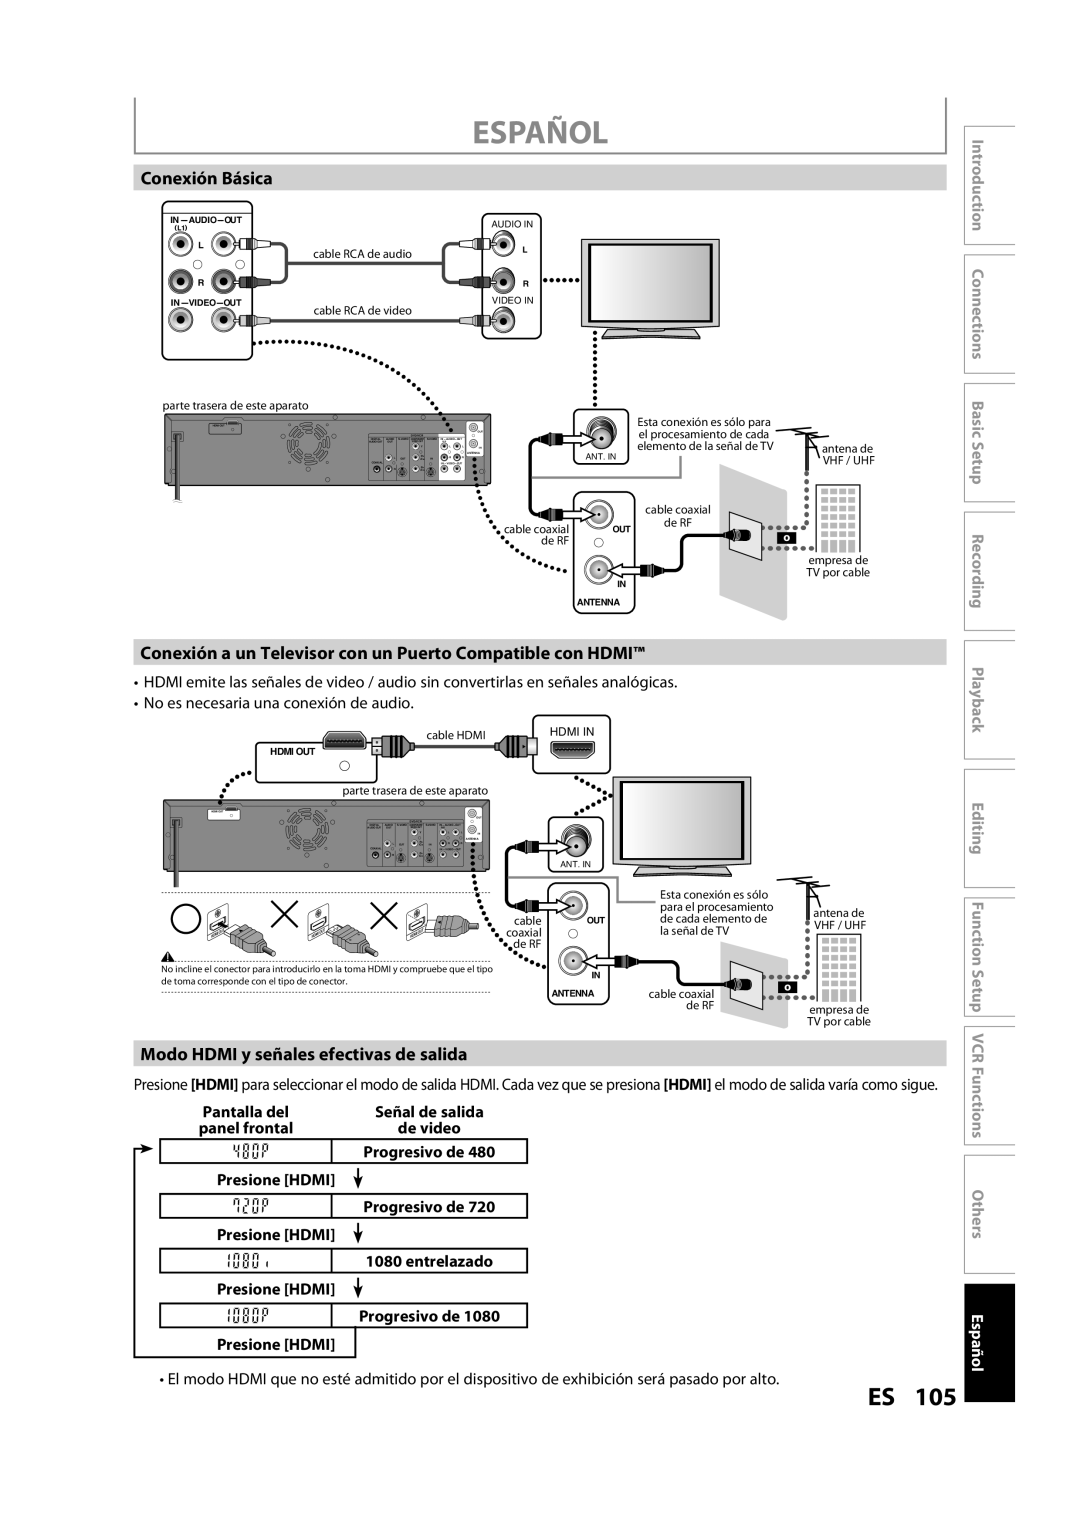 FUNAI ZV457MG9 A Español, Conexión Básica, Conexión a un Televisor con un Puerto Compatible con HDMI, Editing Function 